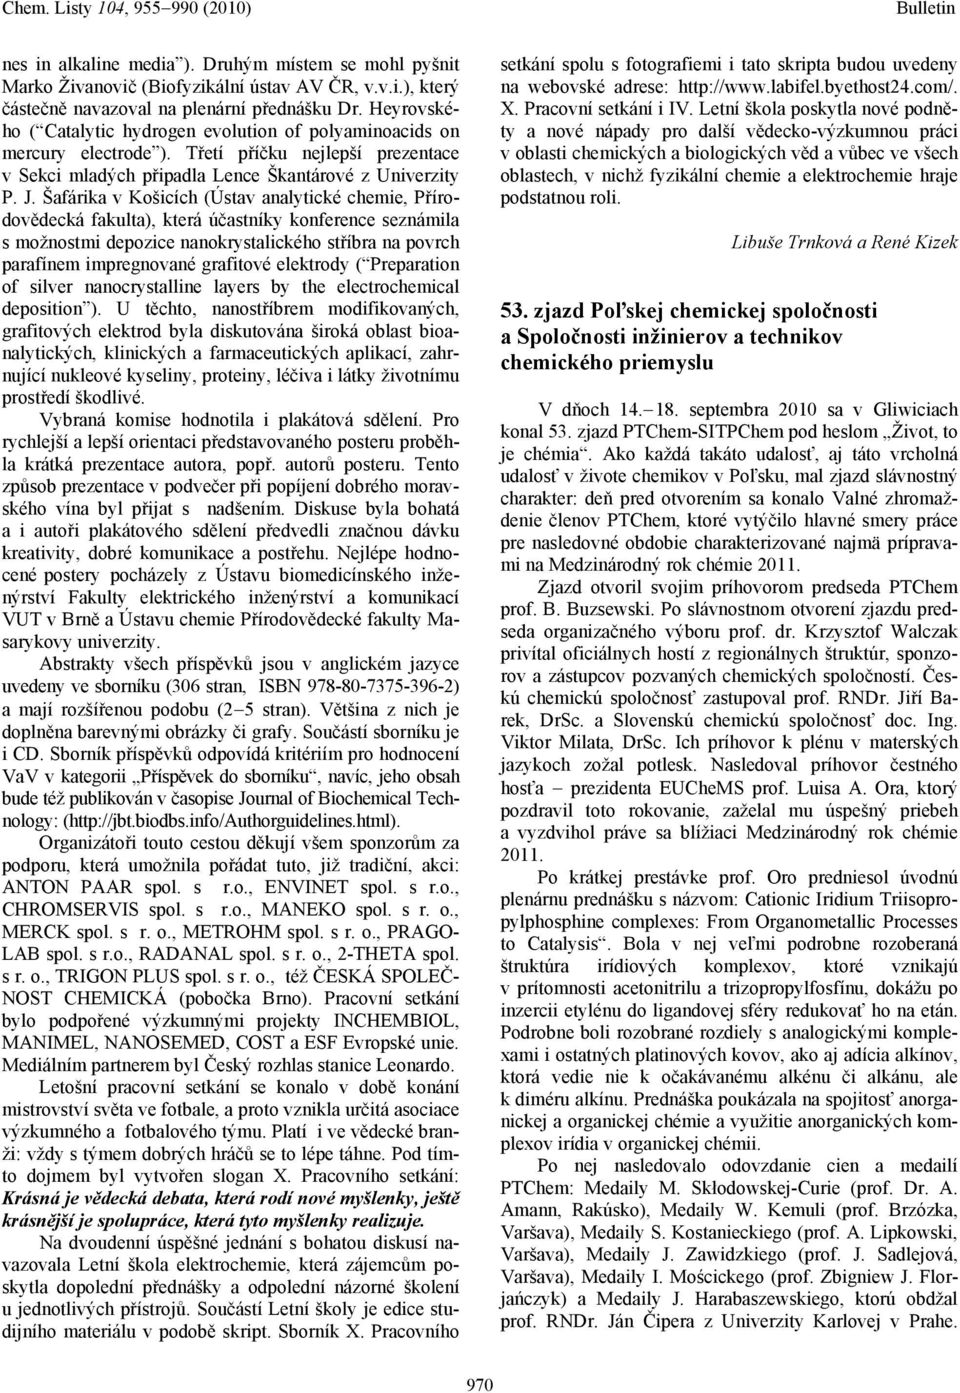 Šafárika v Košicích (Ústav analytické chemie, Přírodovědecká fakulta), která účastníky konference seznámila s možnostmi depozice nanokrystalického stříbra na povrch parafínem impregnované grafitové